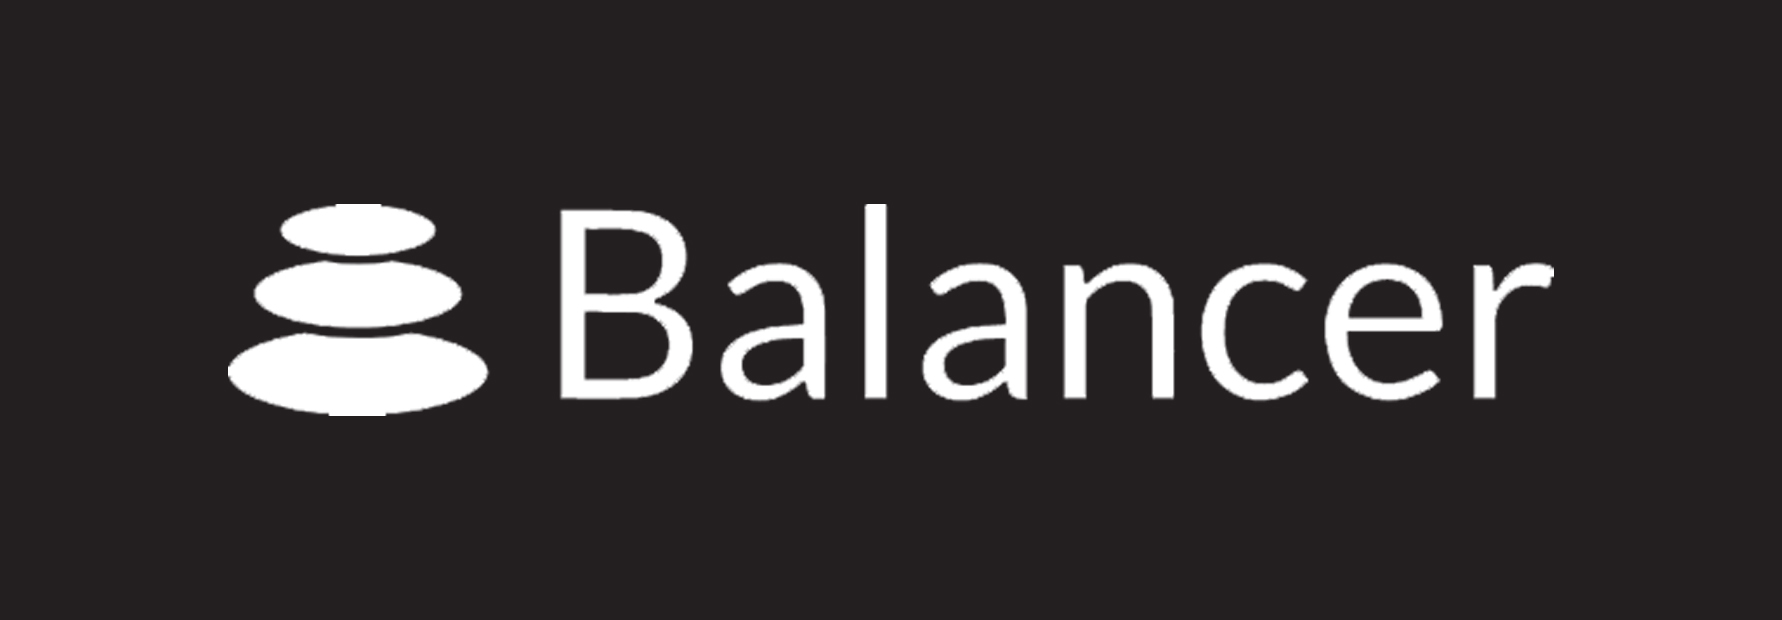 balancer-logo.jpg